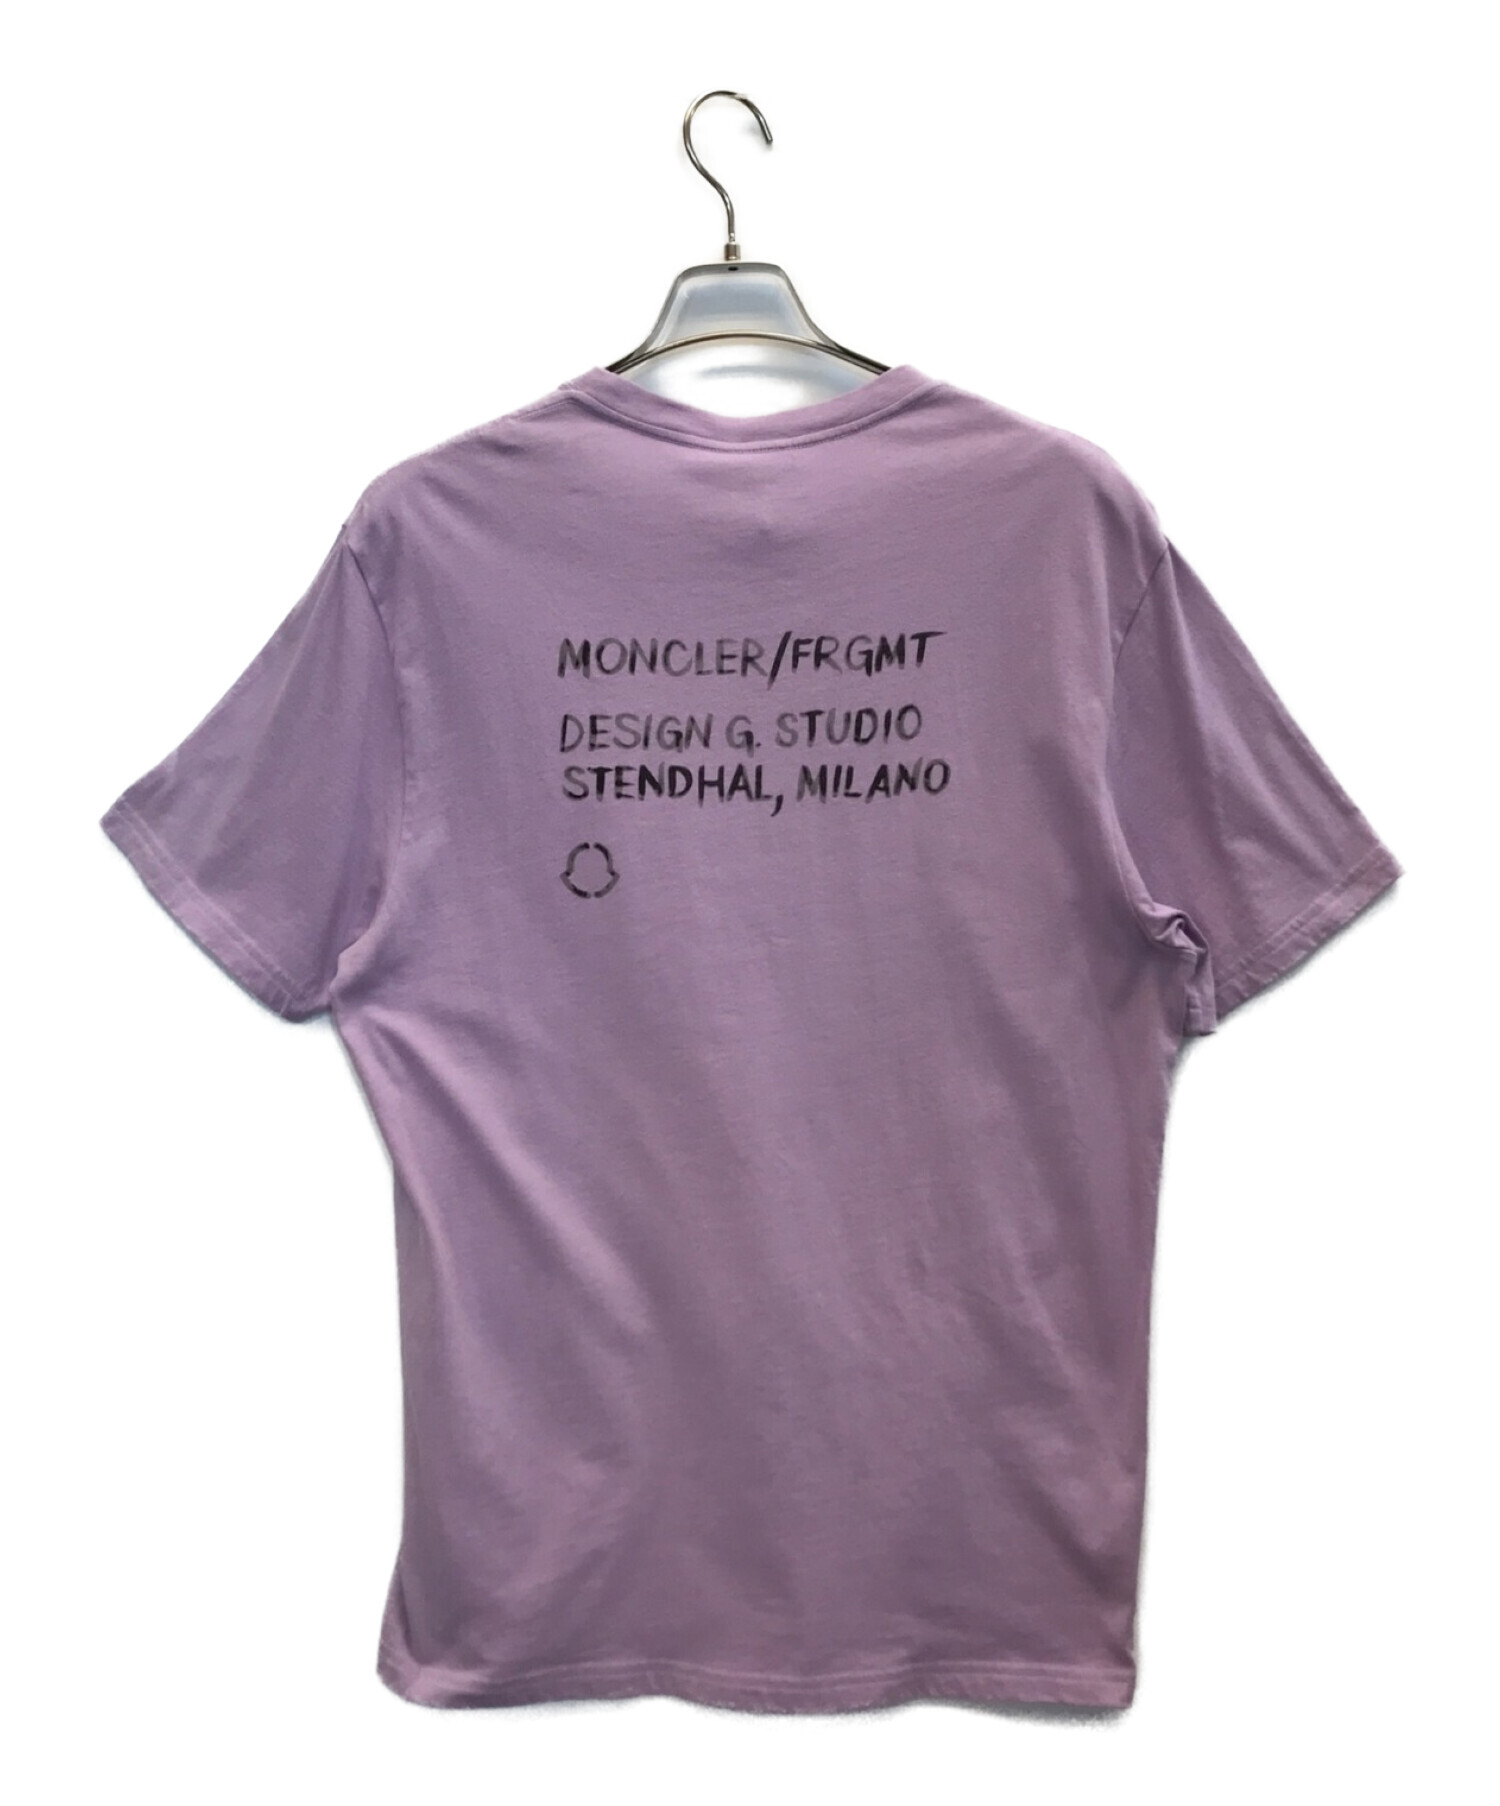 MONCLER (モンクレール) FRAGMENT DESIGN (フラグメント デザイン) Tシャツ パープル サイズ:M